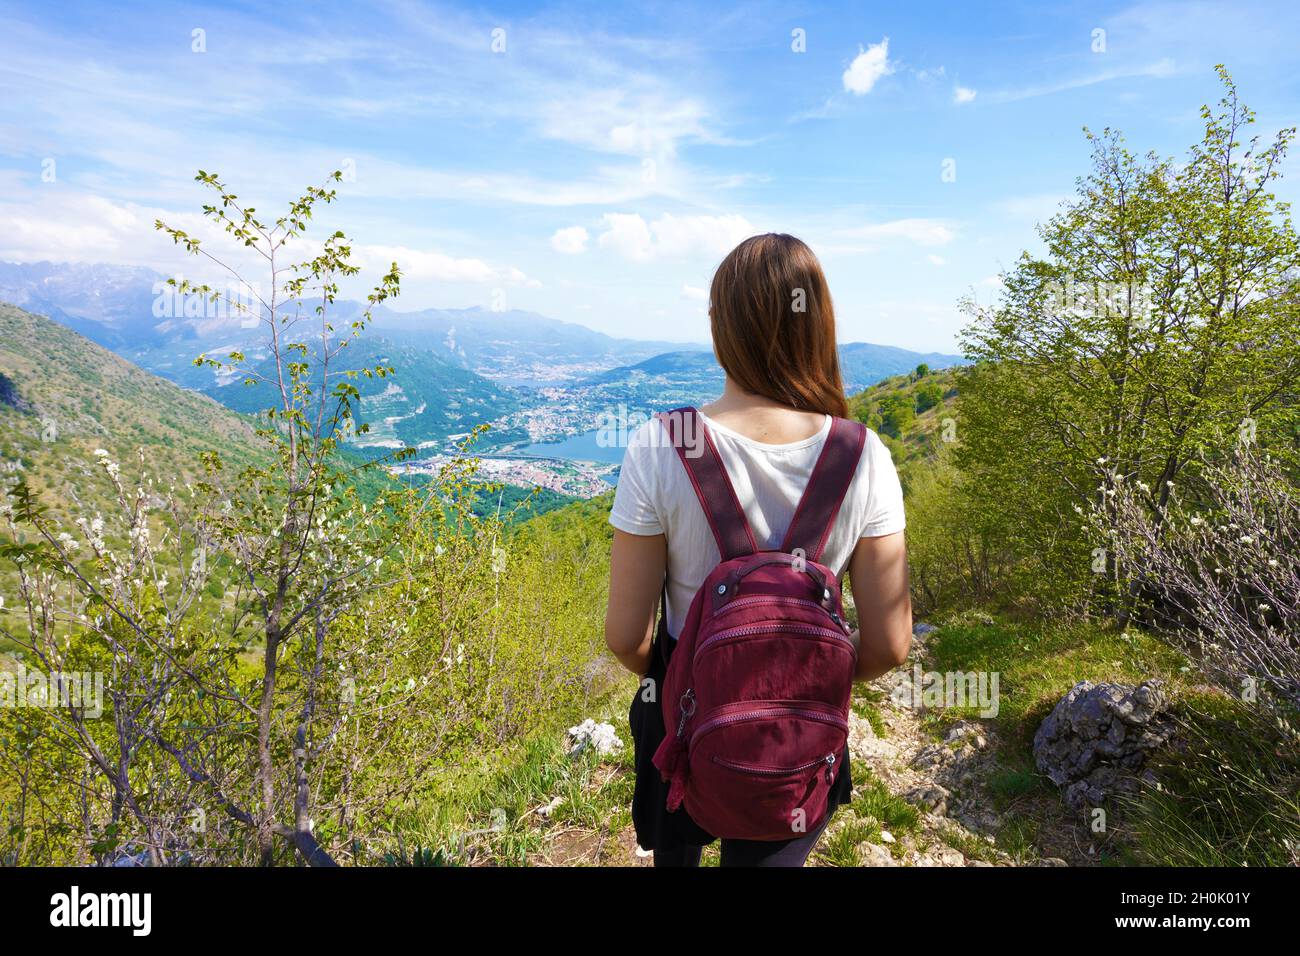 Randonnée de randonneurs féminins dans les montagnes bénéficiant d'une vue du belvédère Banque D'Images